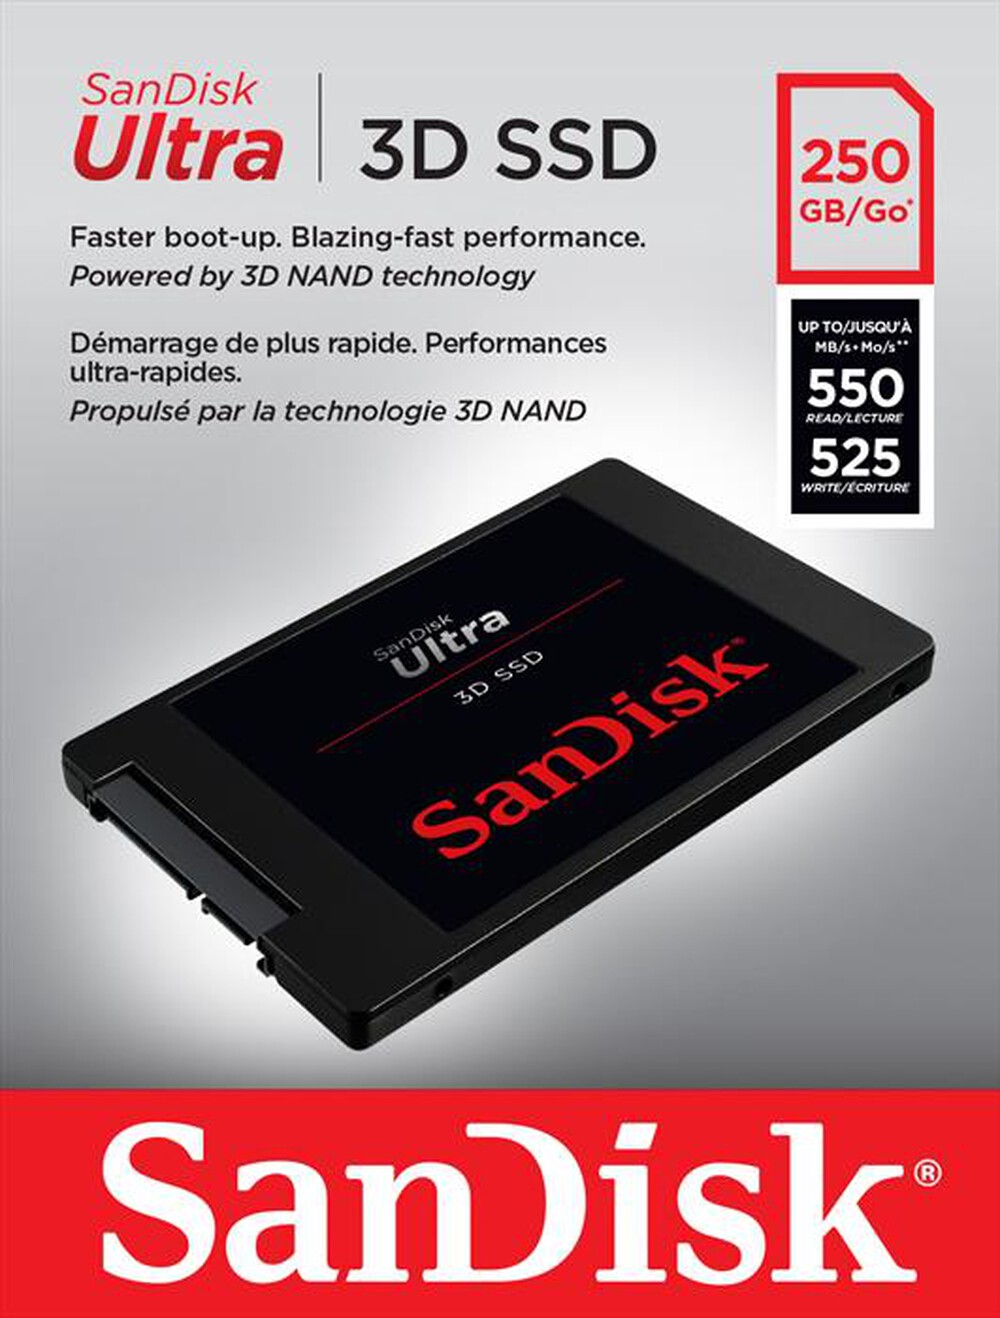 "SANDISK - SSD INTERNO ULTRA 3D 250GB"